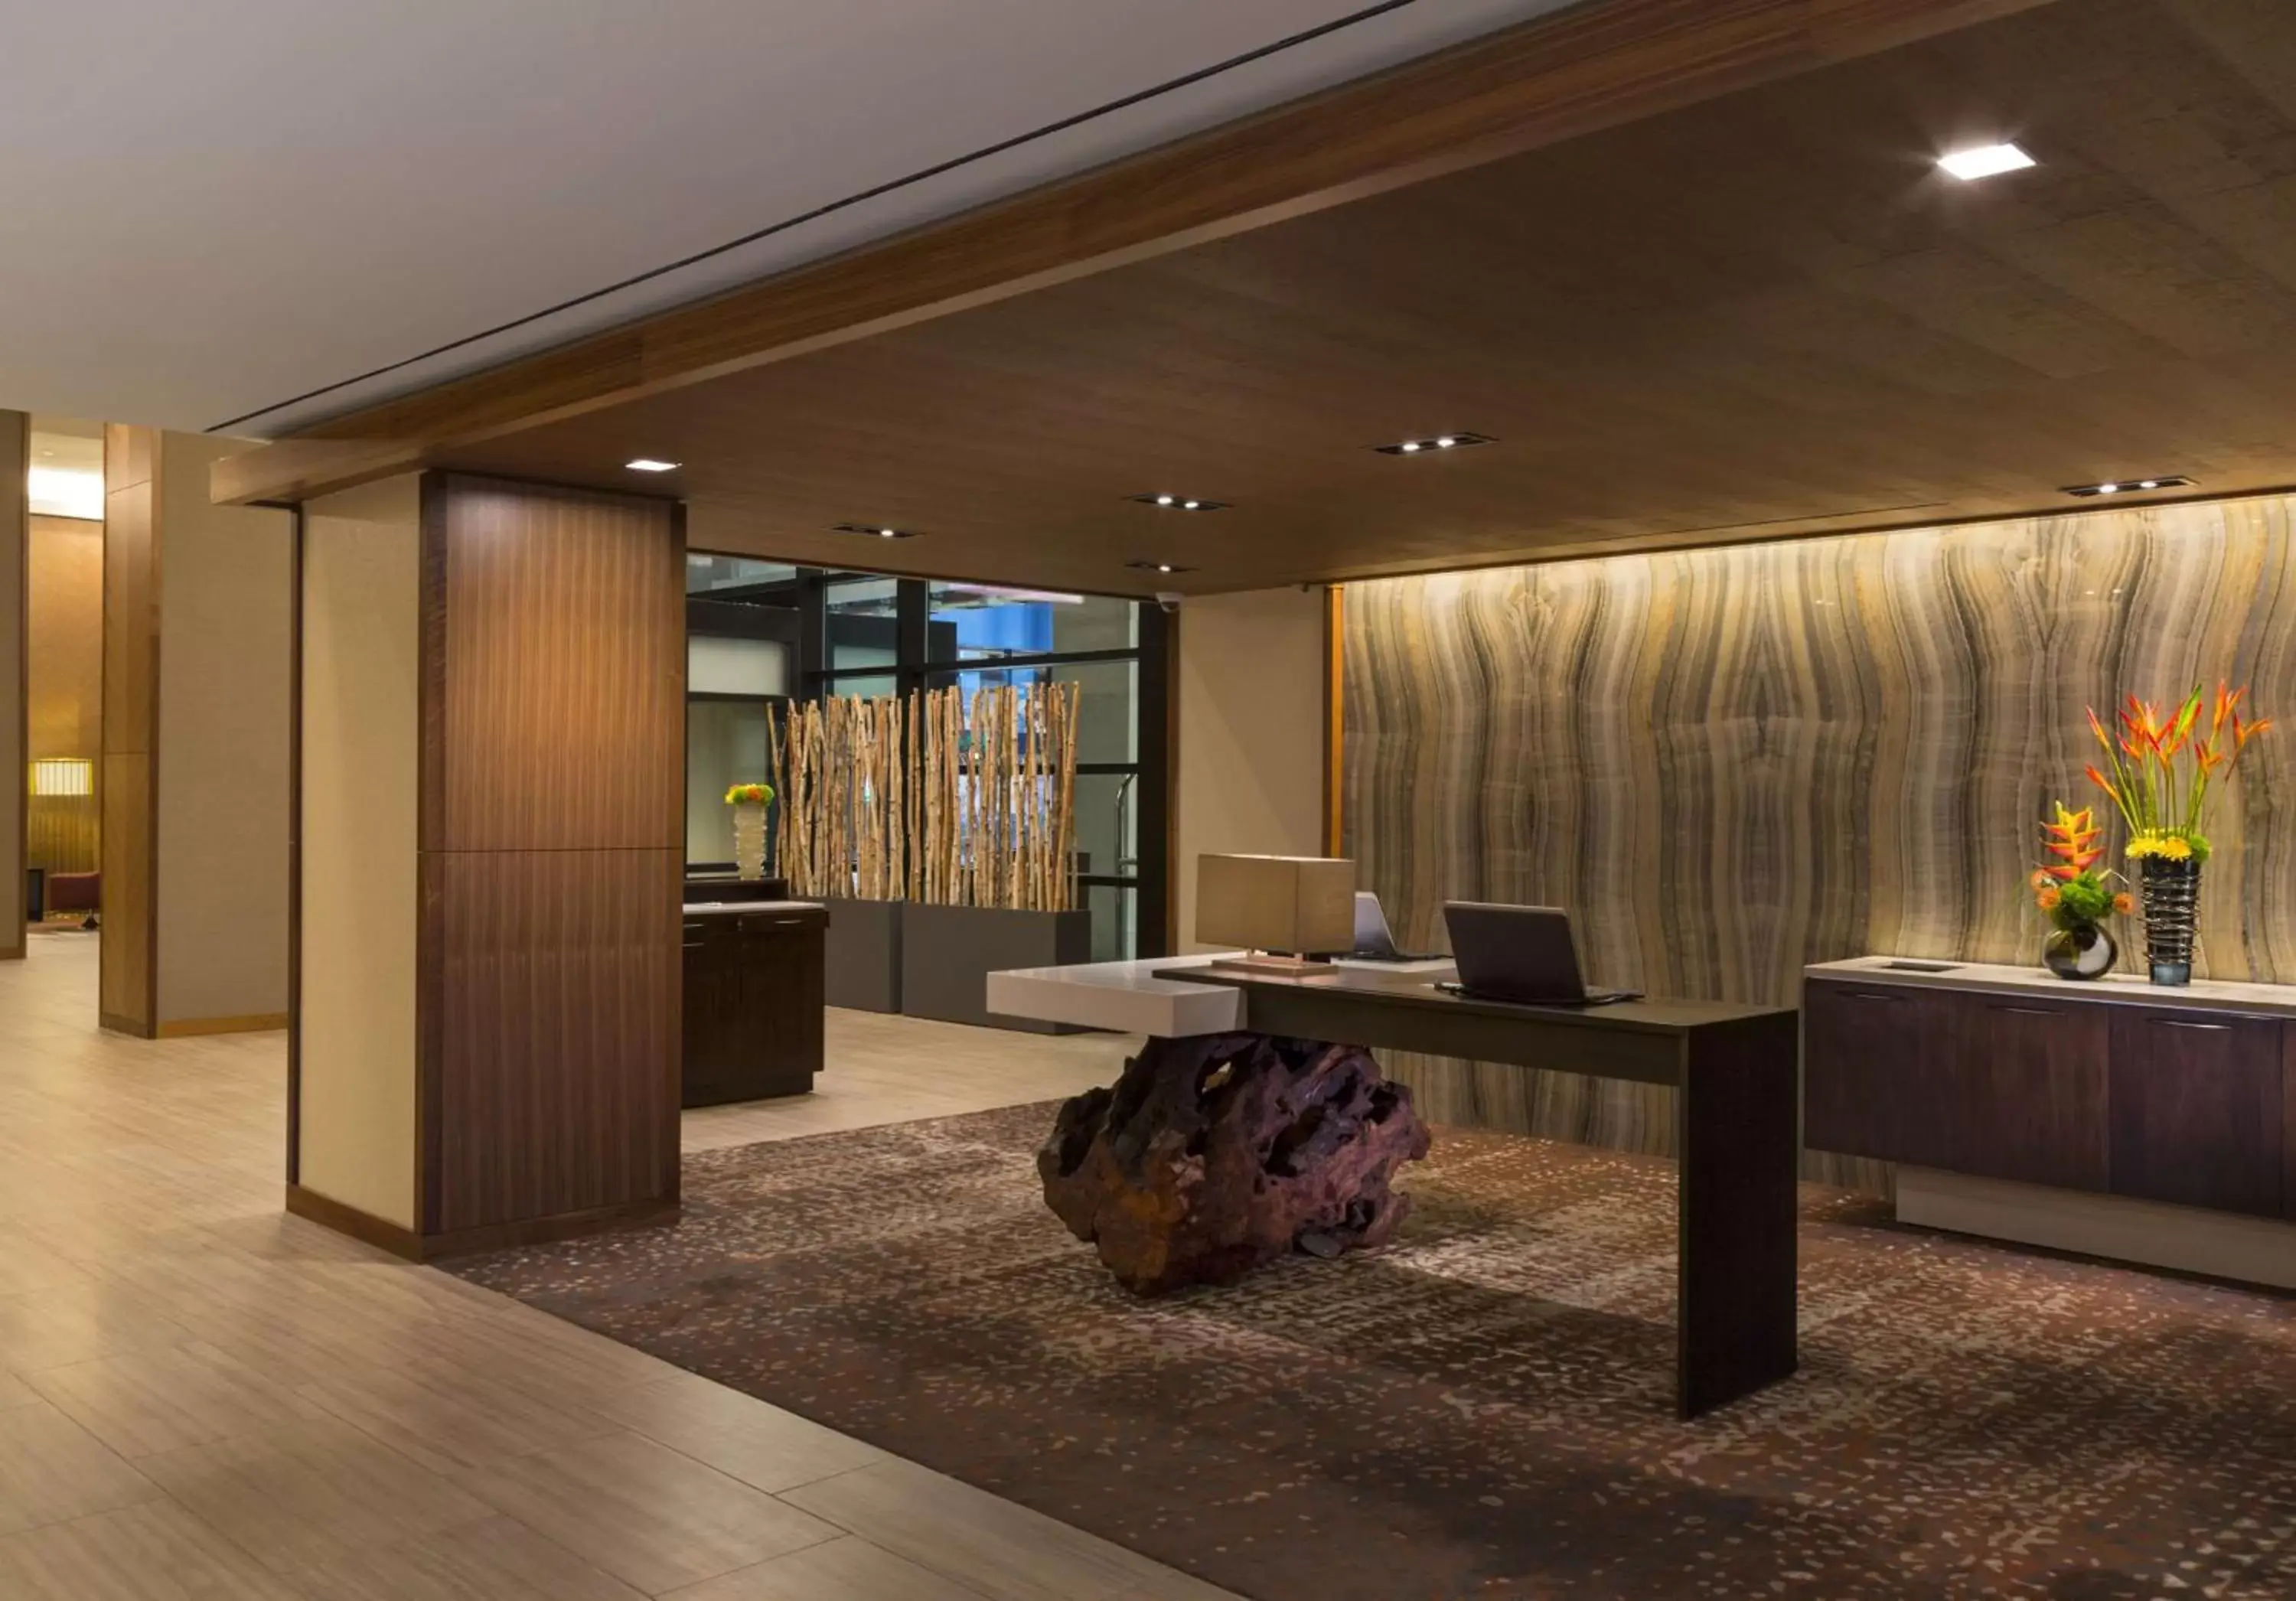 Lobby or reception, Lobby/Reception in Grand Hyatt Denver